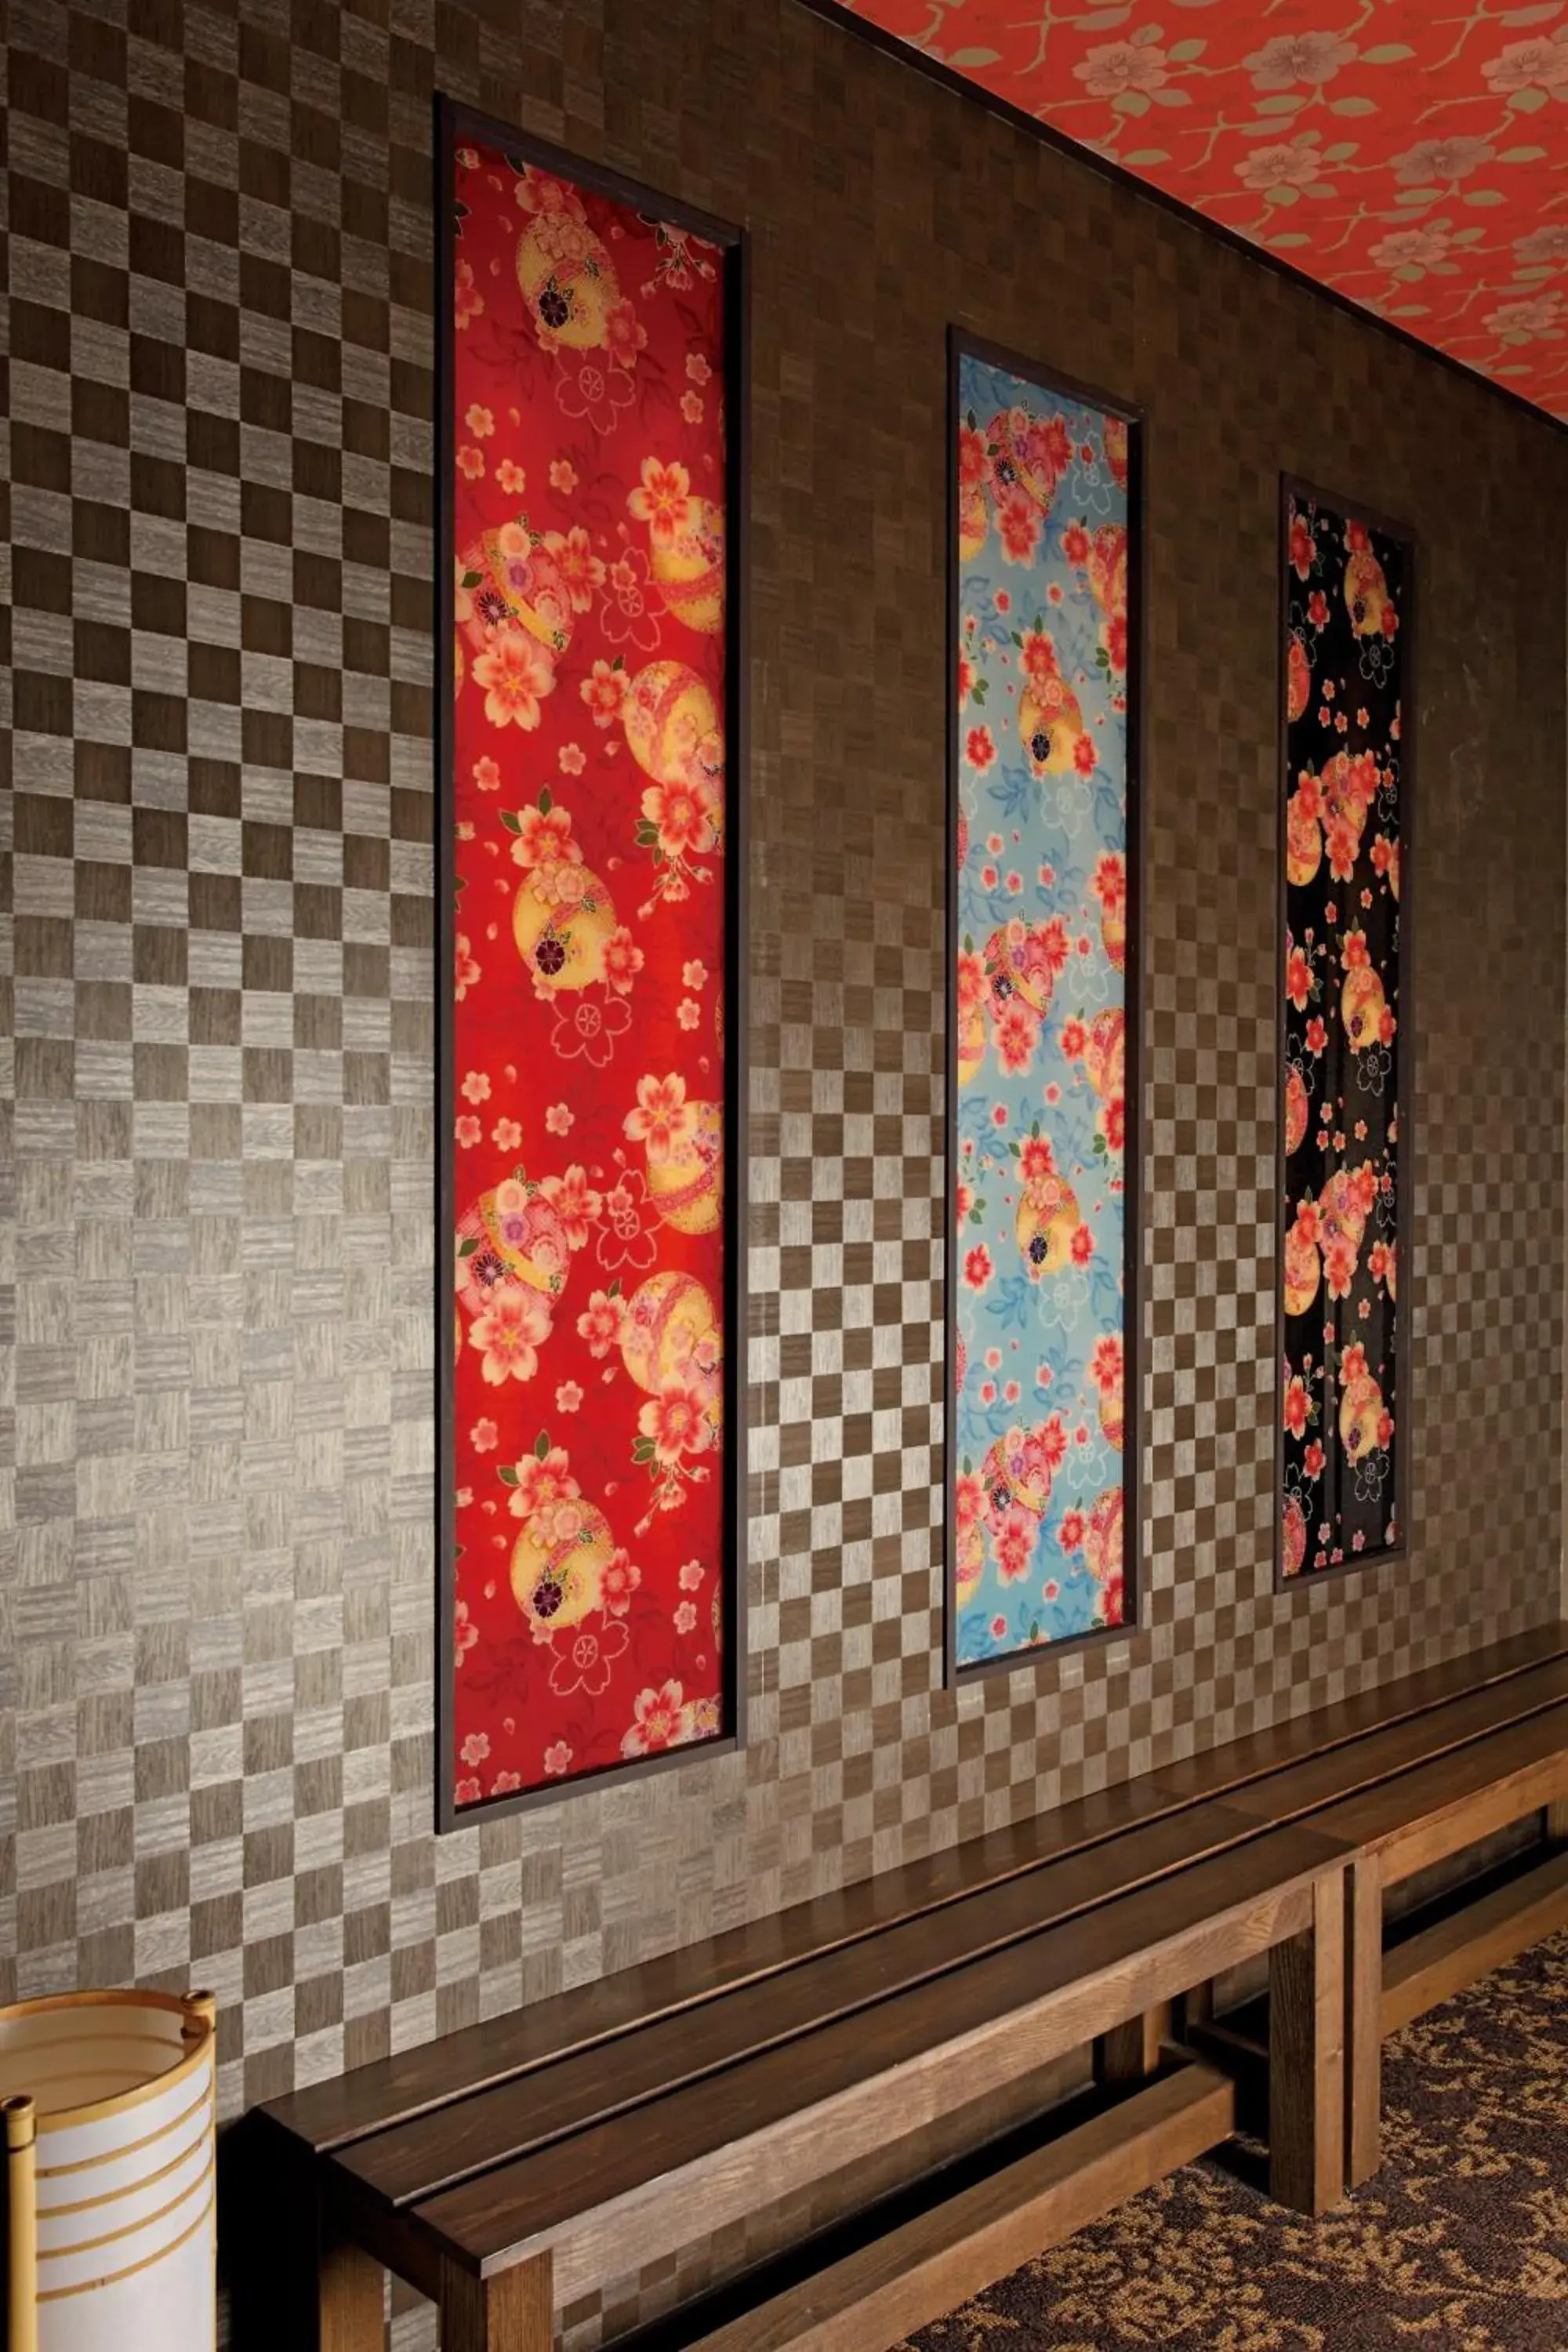 Decorative detail in Matsui Bekkan Hanakanzashi